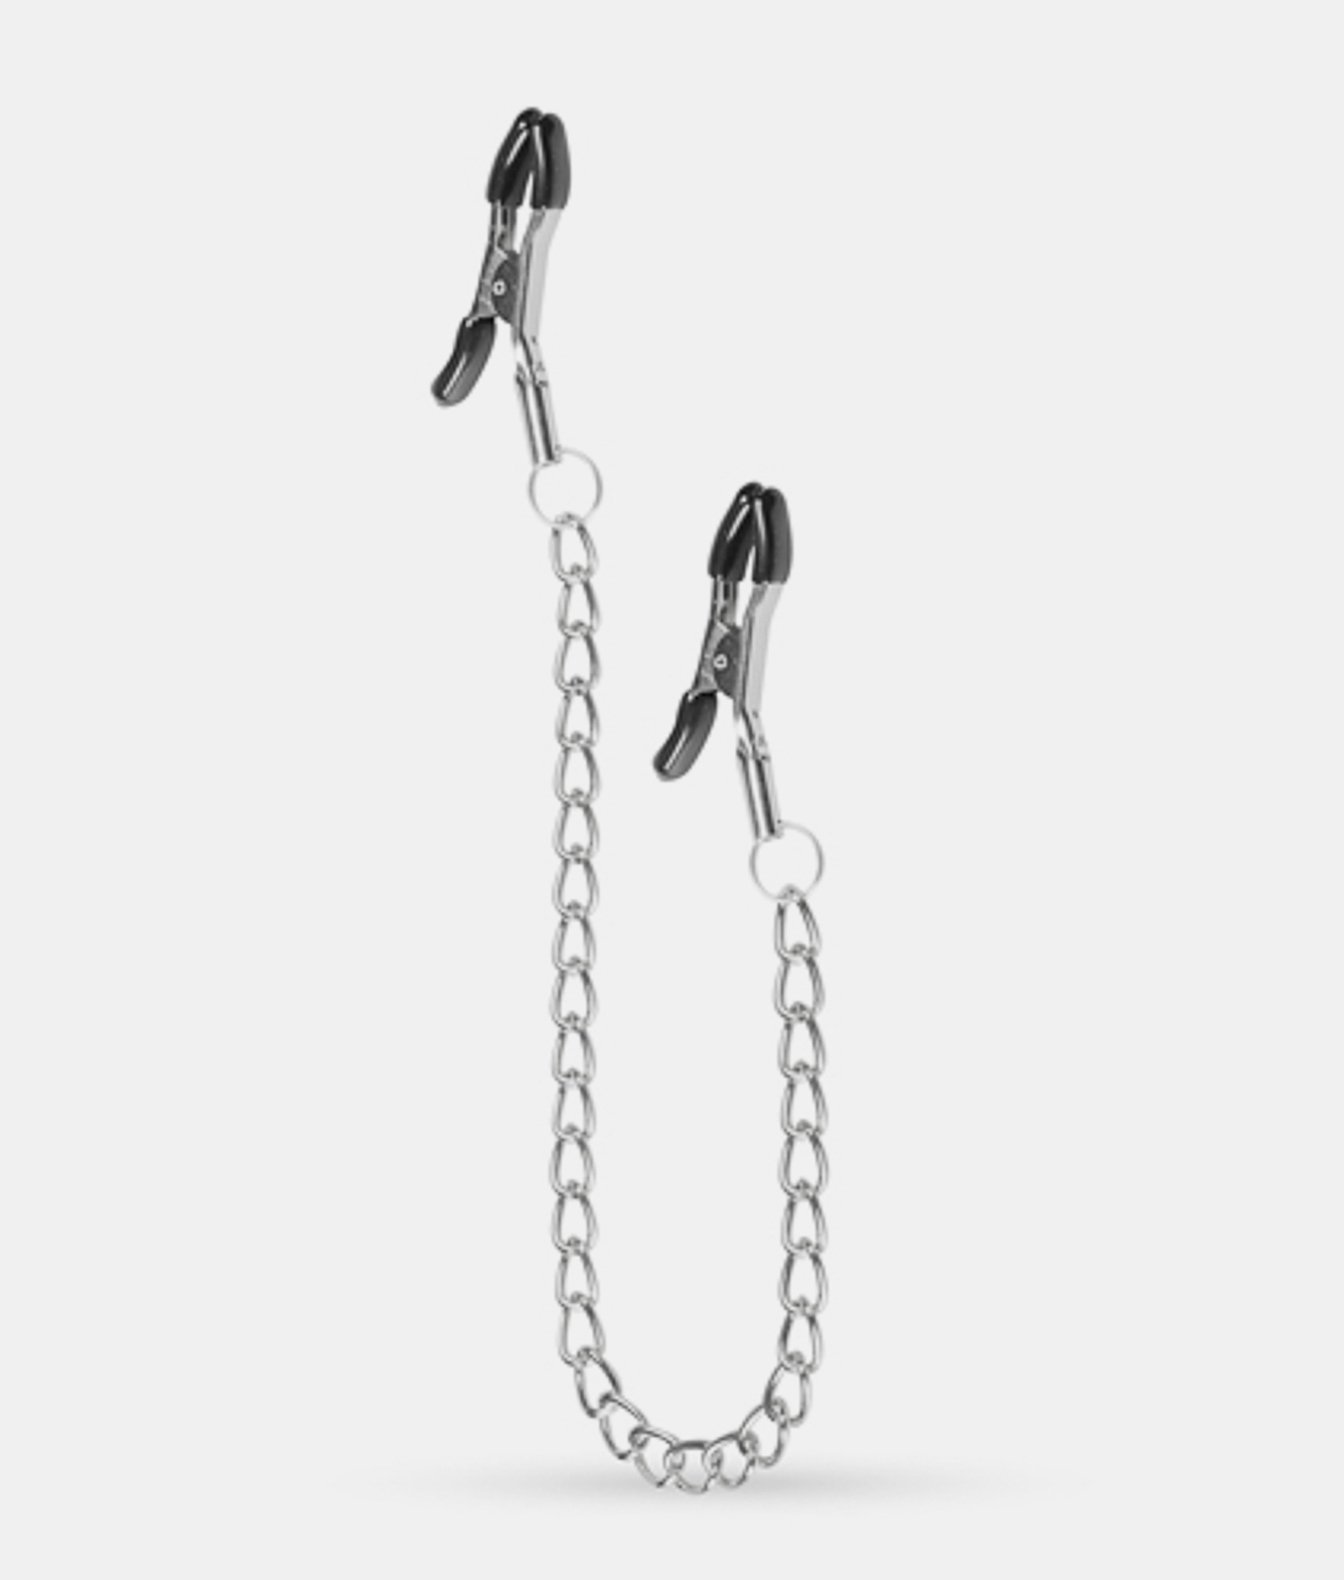 Easytoys Classic Nipple Clamps With Chain zaciski na sutki z łańcuszkiem